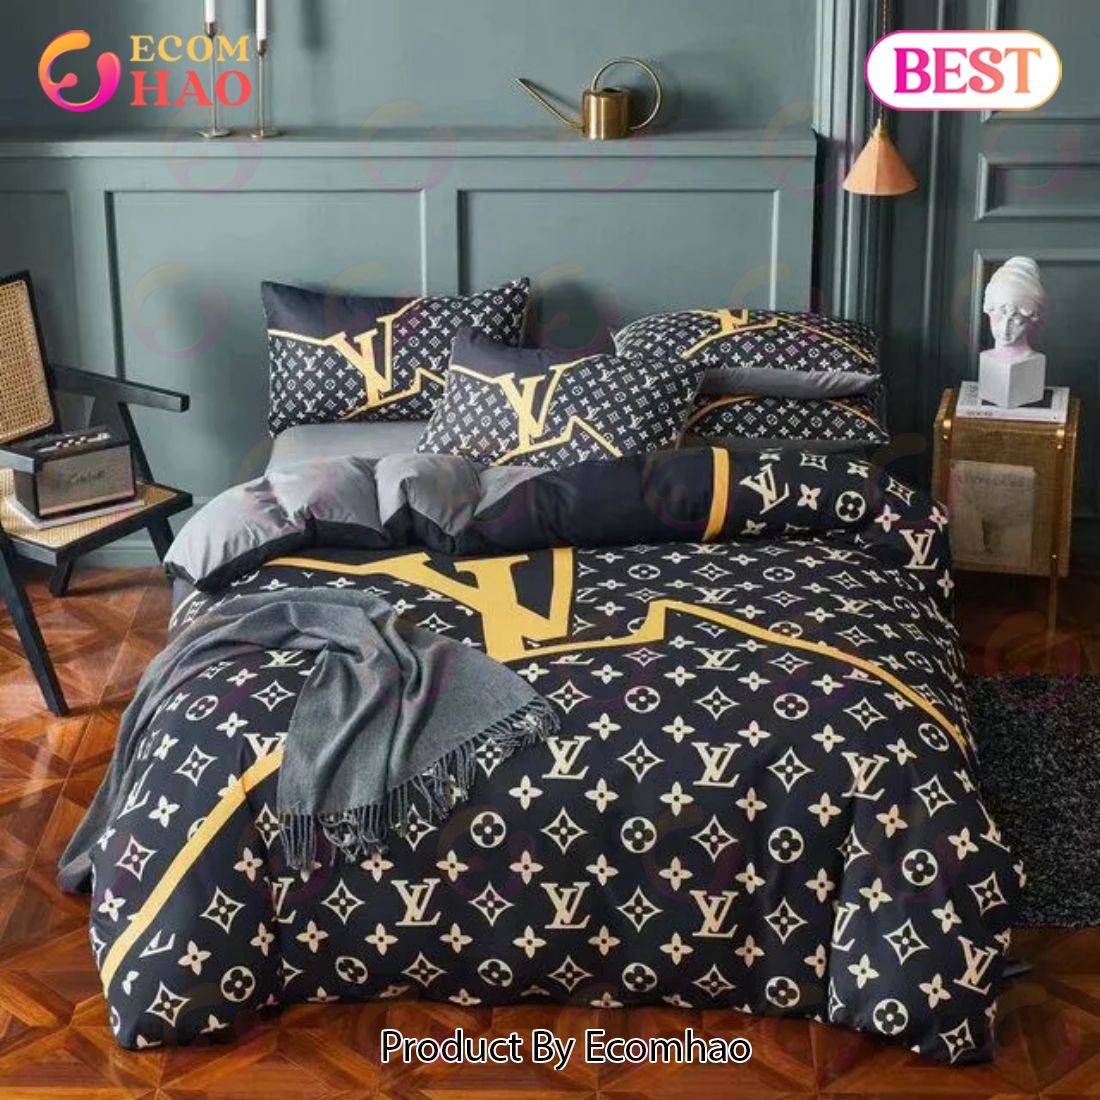 Louis Vuitton Supreme Rabbit Luxury Brand Bedding Set Bedspread